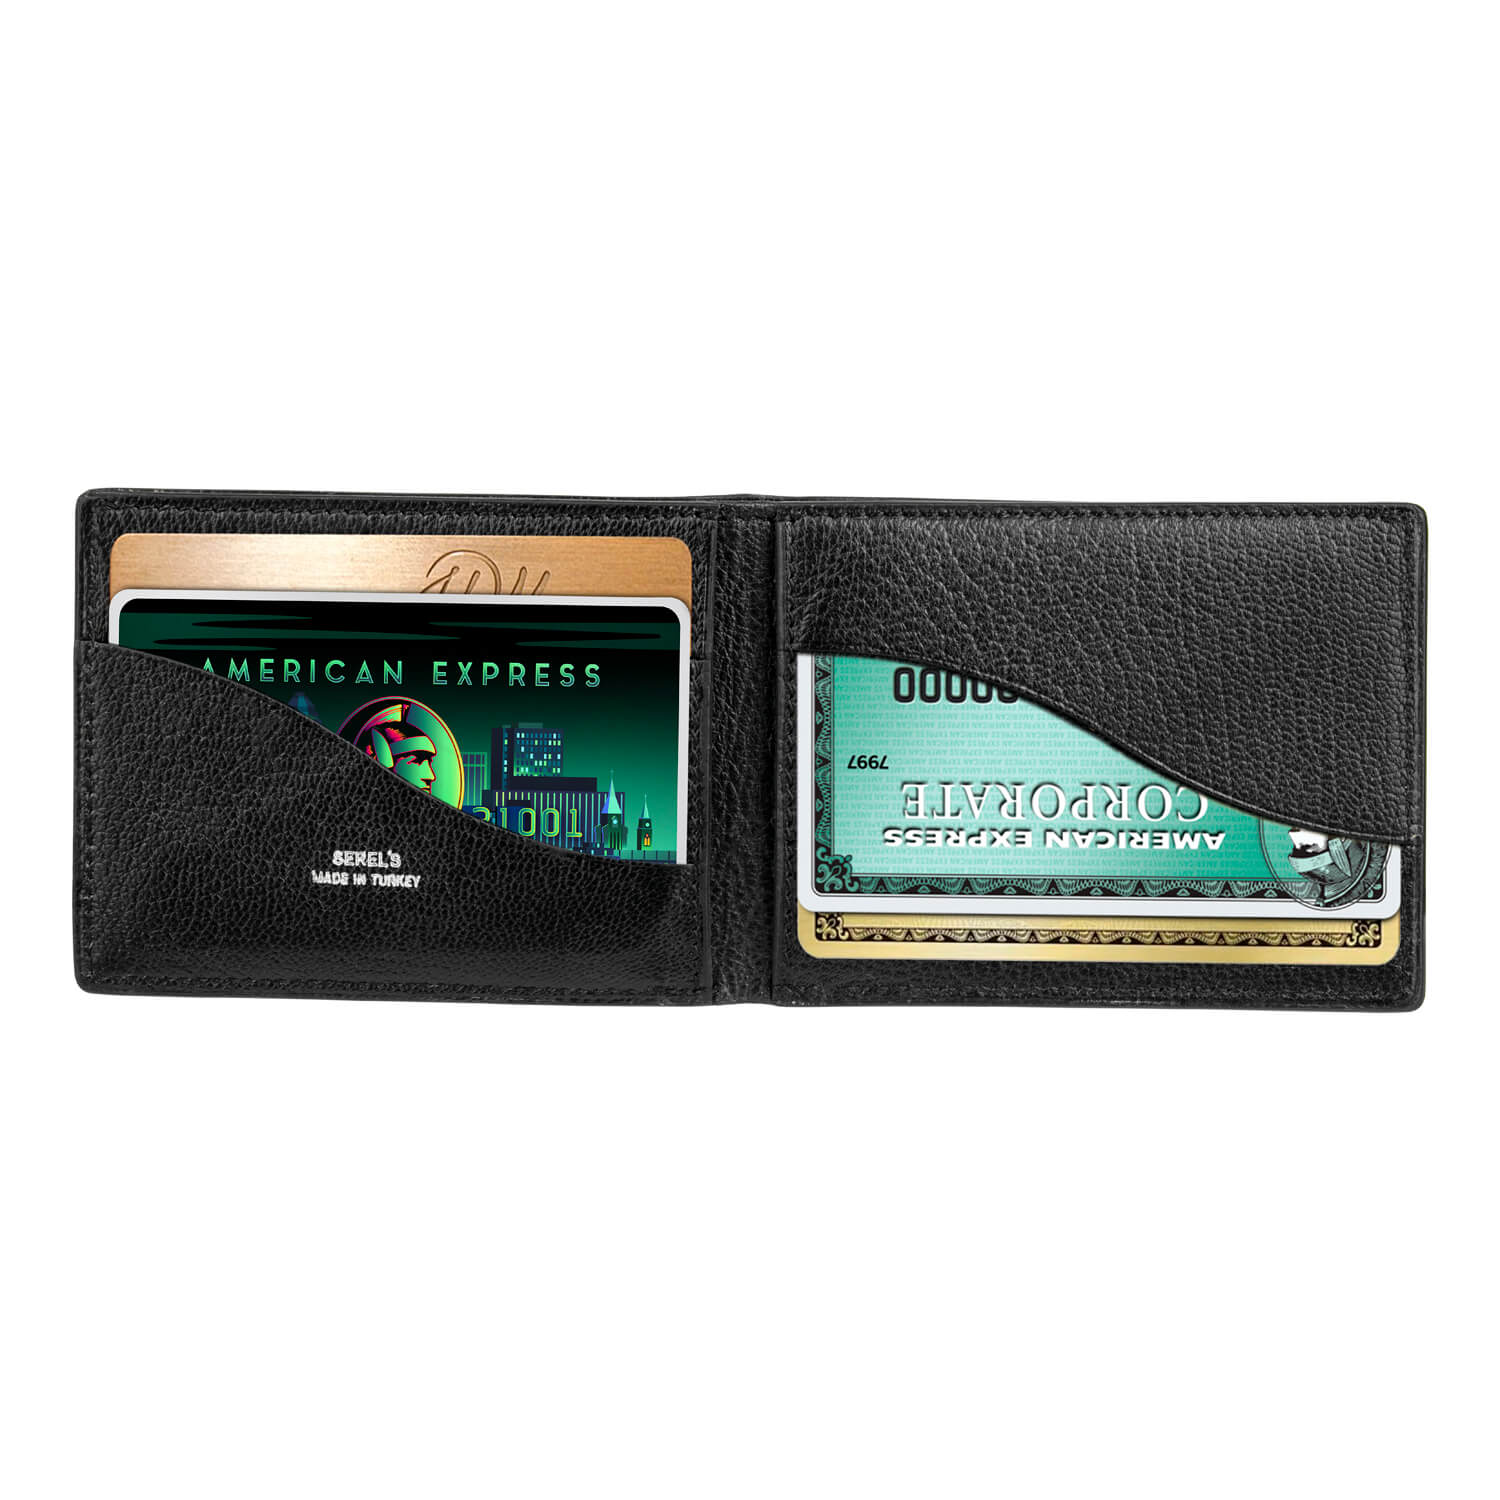 Serel's Full Grain Goatskin Slim Classic Wallet for Men